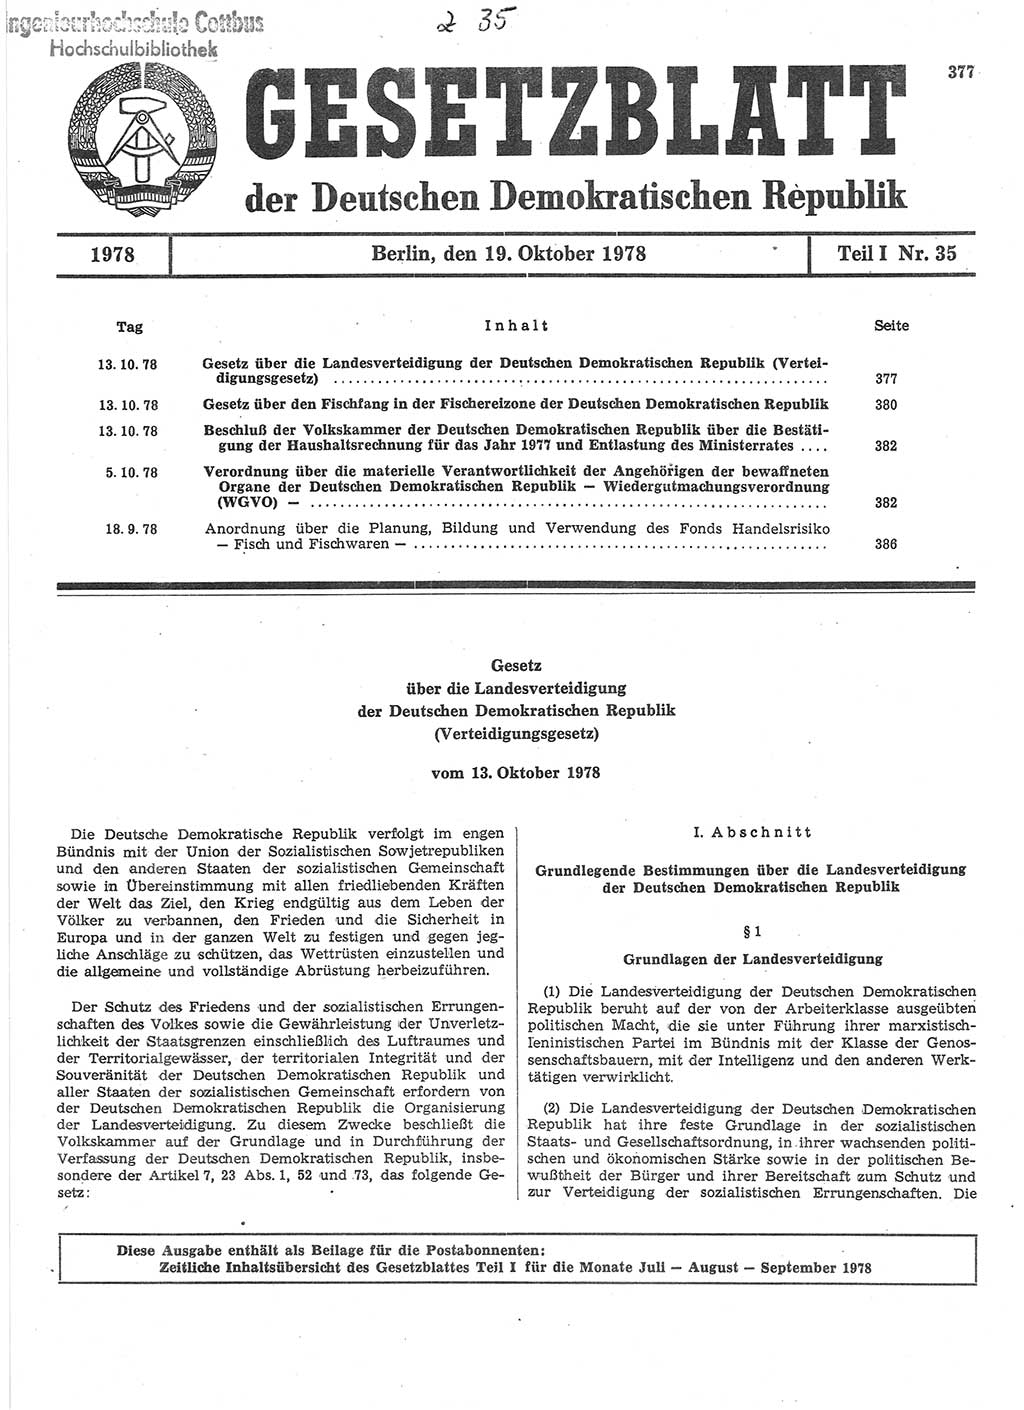 Gesetzblatt (GBl.) der Deutschen Demokratischen Republik (DDR) Teil Ⅰ 1978, Seite 377 (GBl. DDR Ⅰ 1978, S. 377)